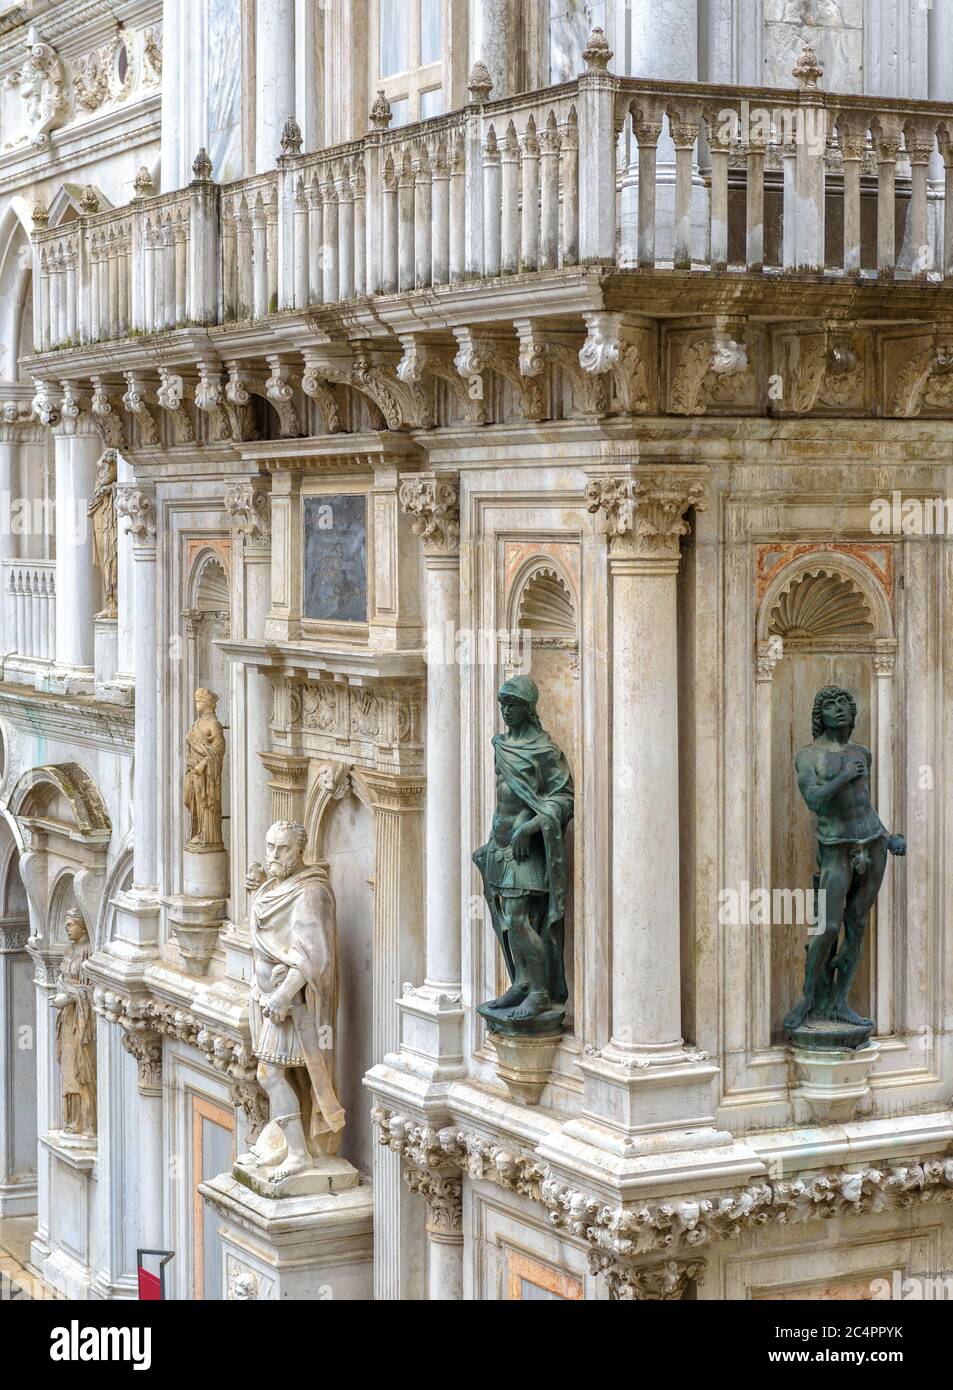 Palais des Doges ou Palazzo Ducale, Venise, Italie. C'est un monument célèbre de Venise. Belle façade ornée de la vieille maison de Doge avec statues et balco Banque D'Images